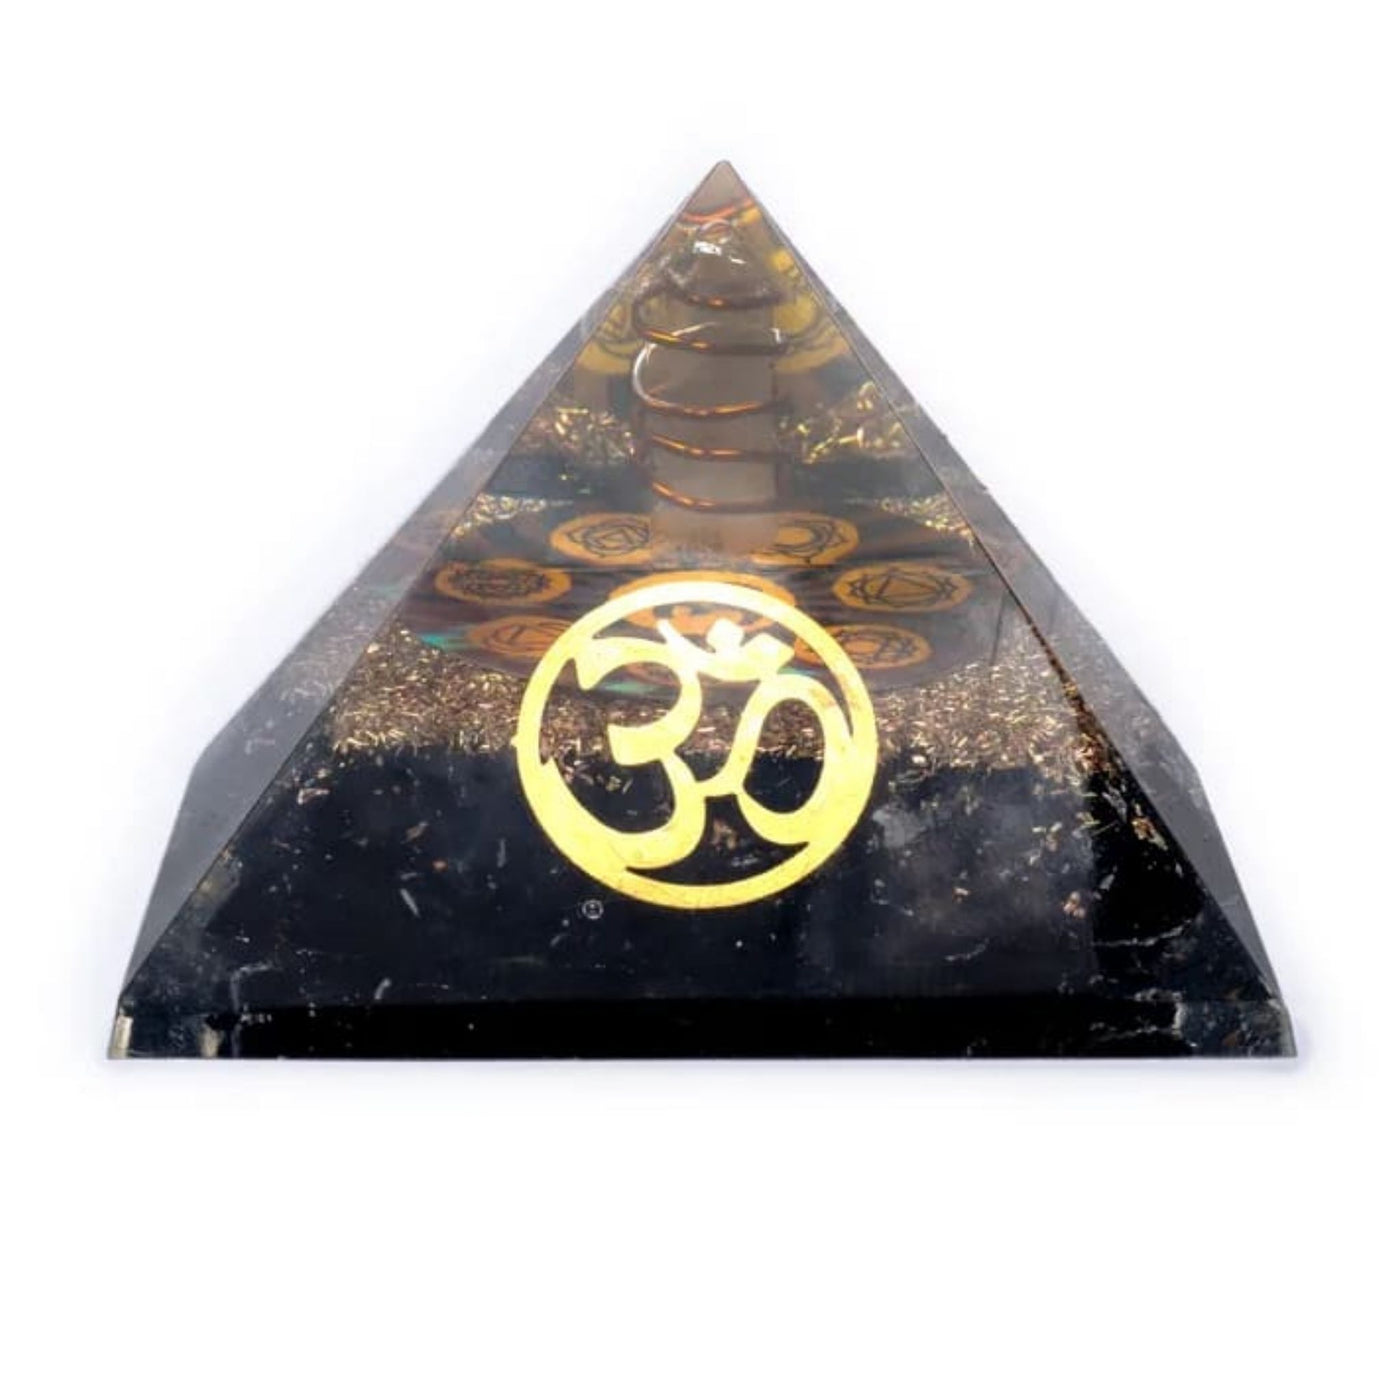 Orgonit pyramid - svart turmalin & Ohm / Aum